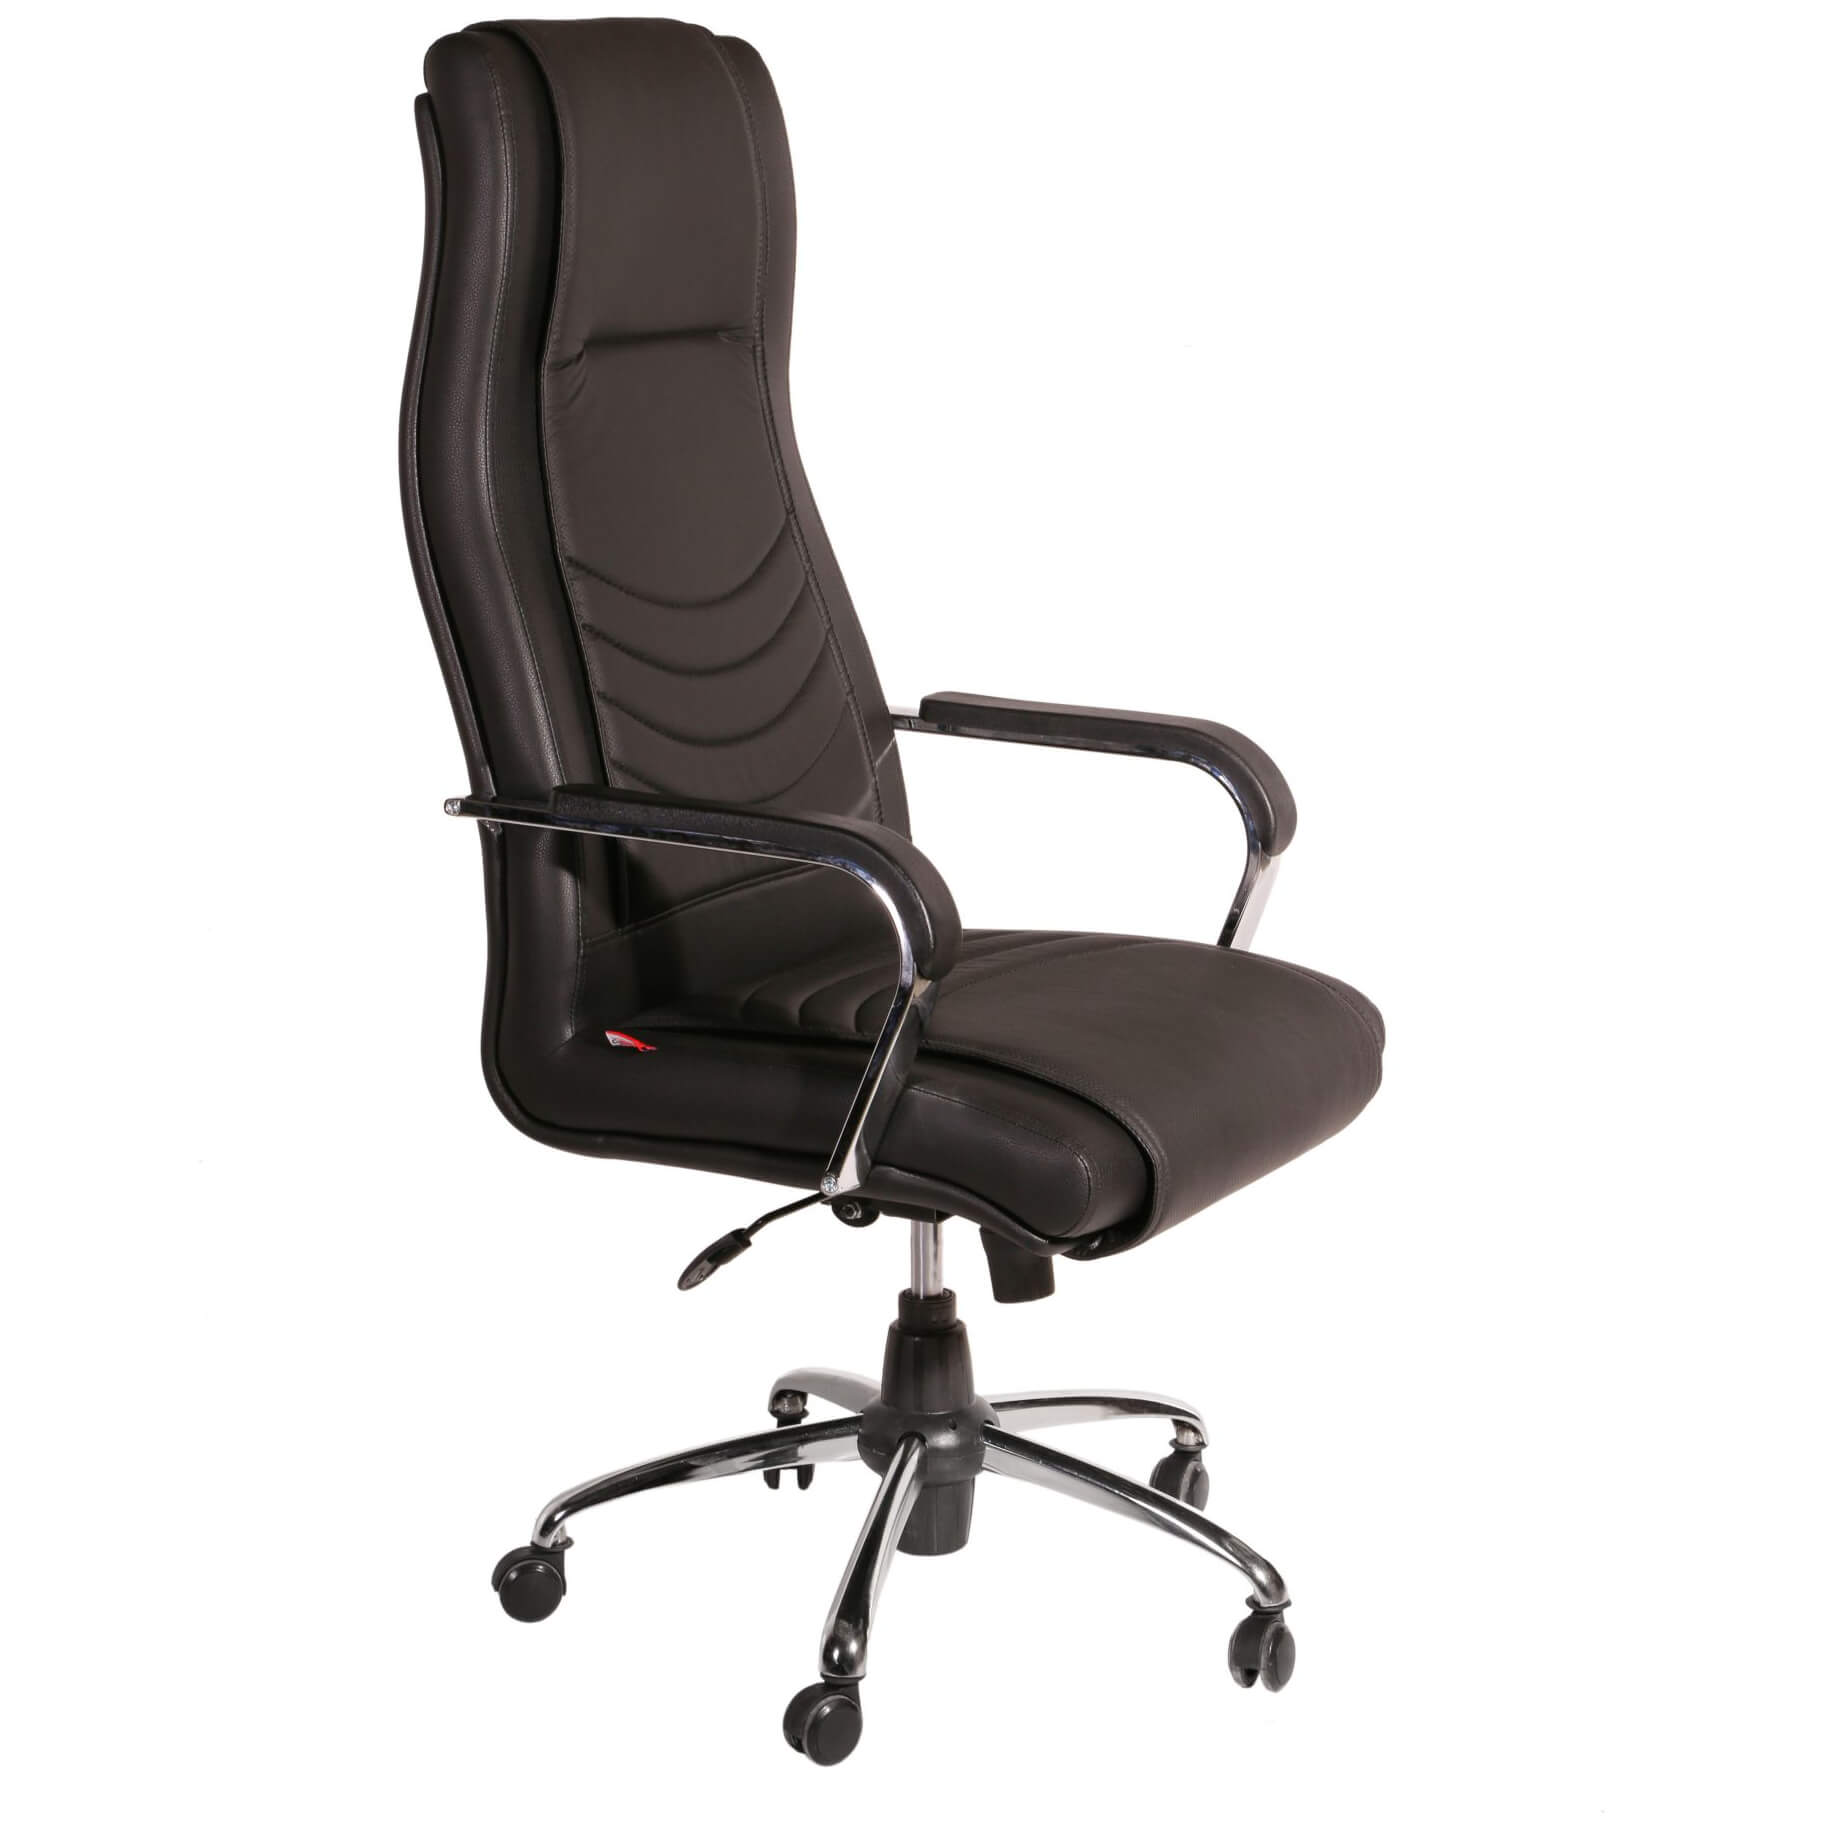 صندلی مدیریتی چوب فروش – مدل M501